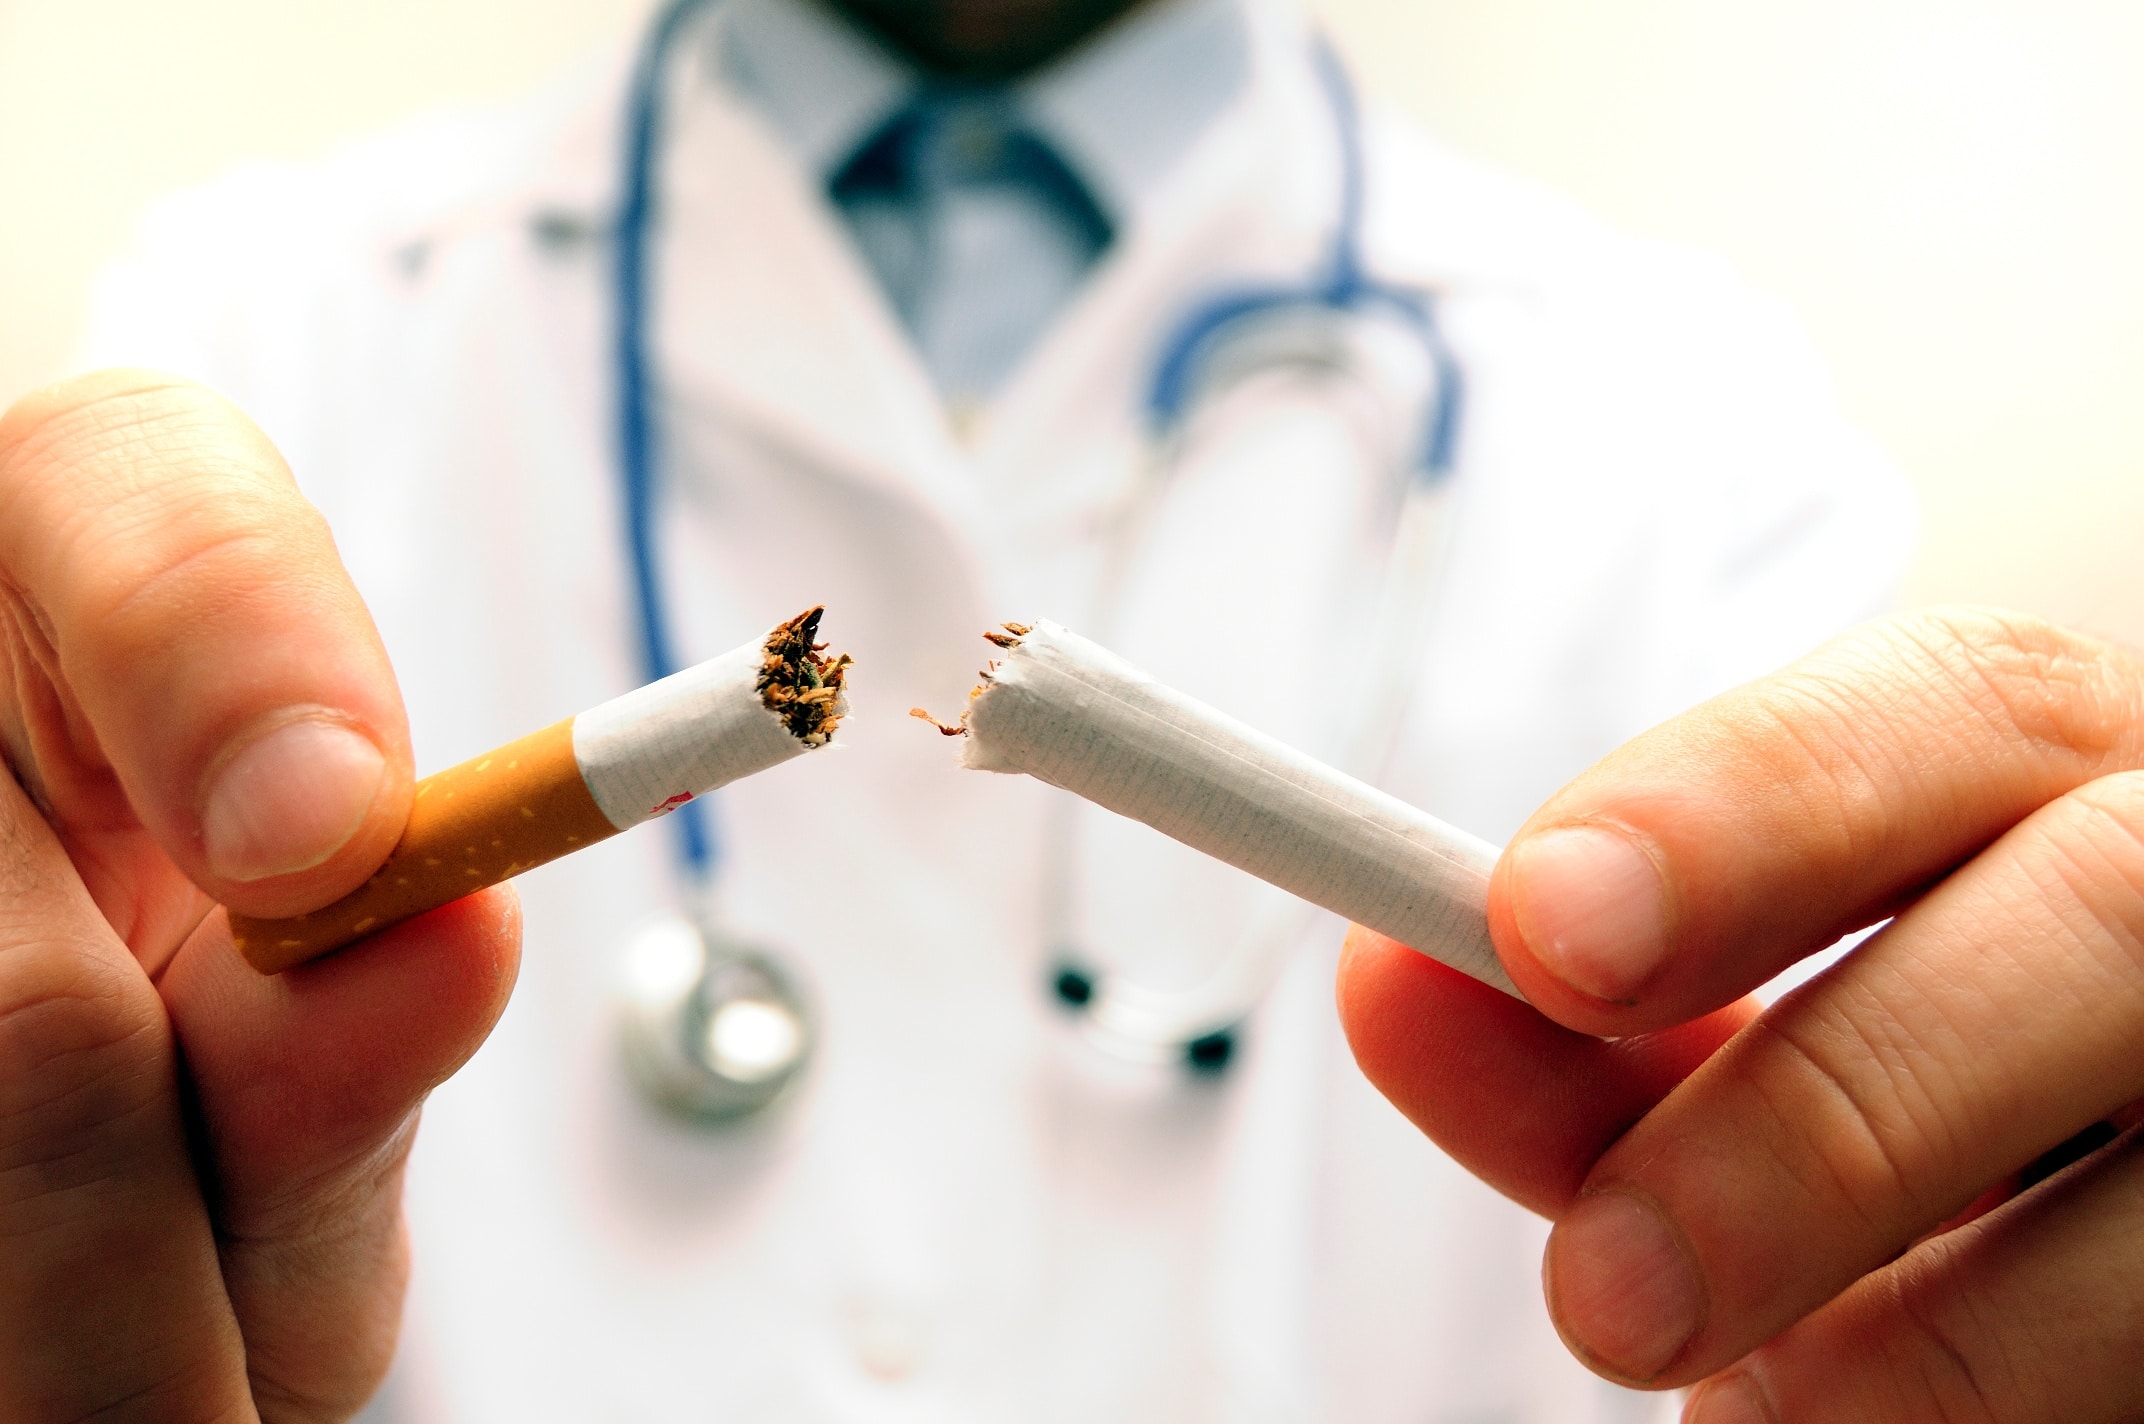 Teste seu conhecimento sobre o tabagismo e o impacto que ele tem como fator de risco para cânceres